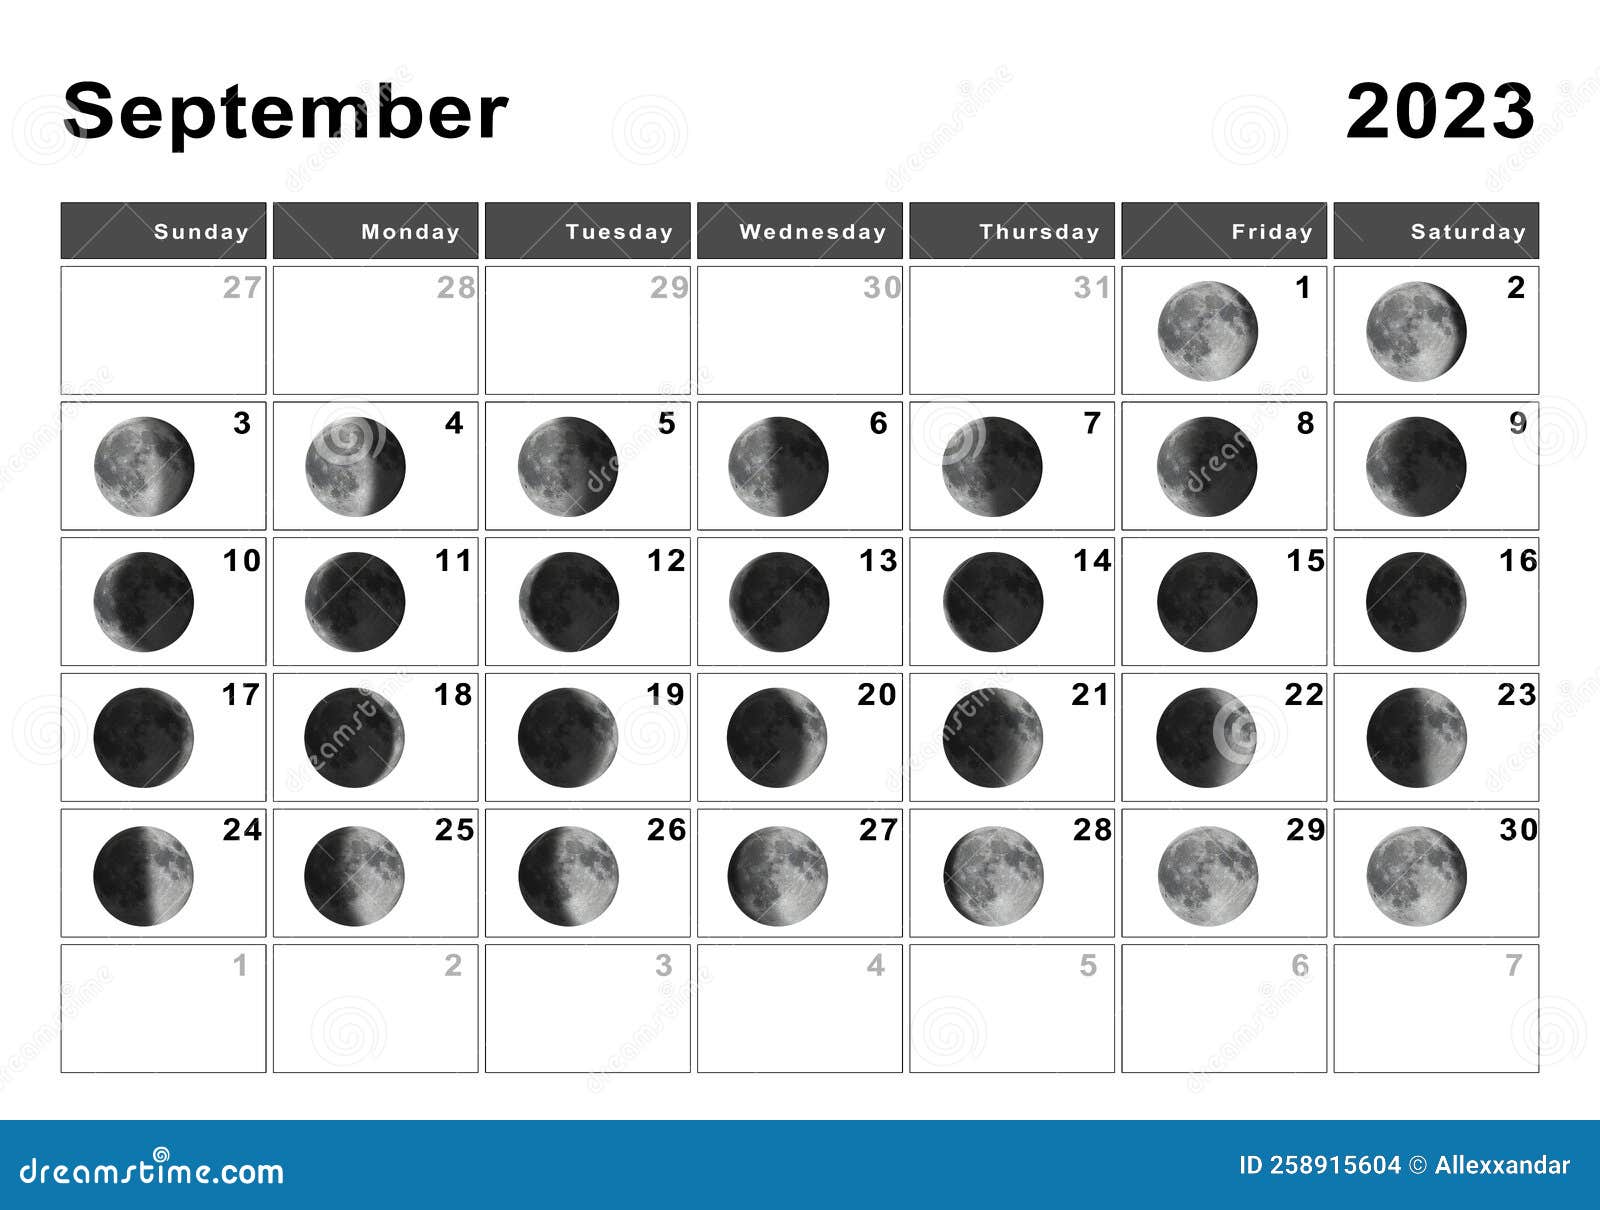 Стрижка волос март 2024 благоприятные мир космоса. Цикл лунных фаз. Календарь Луны 2023. Фазы Луны на сентябрь 2024. Лунный календарь на сентябрь 2023.